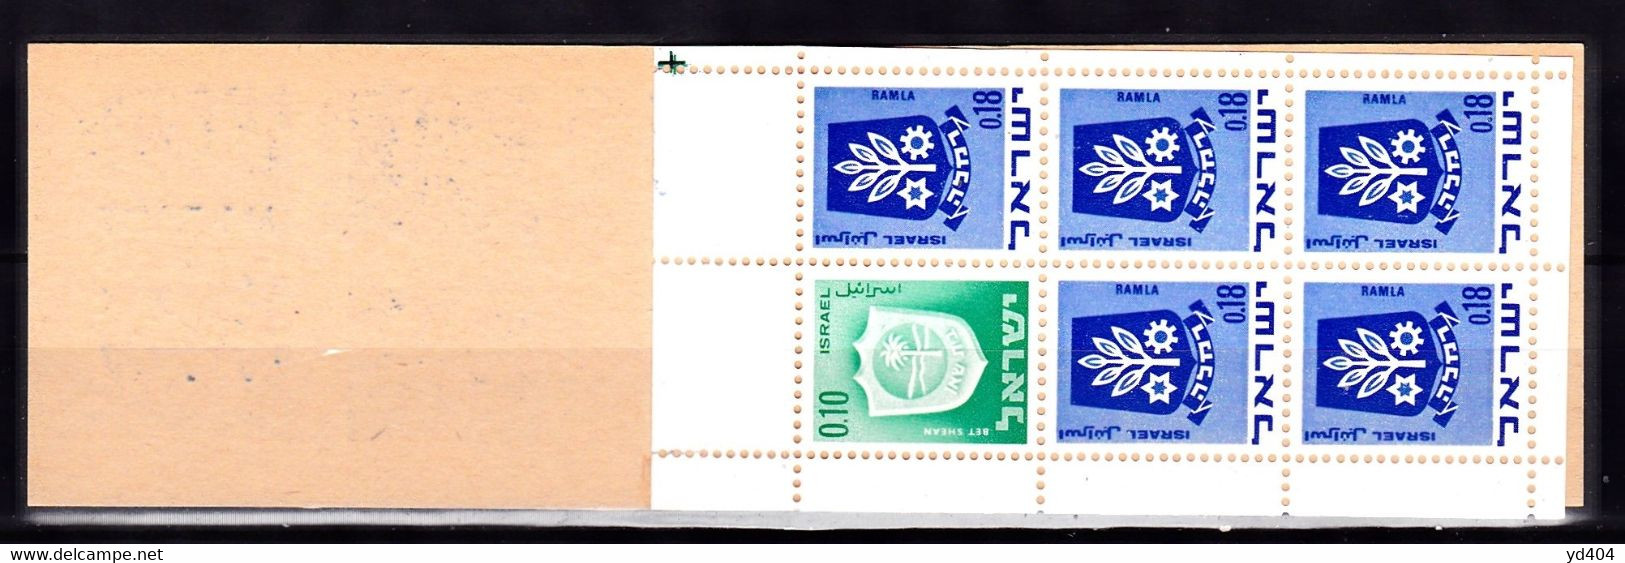 IL55- ISRAEL – 1970 - BOOKLETS – MI # 326(x1)-486(x5) MNH 7 € - Markenheftchen